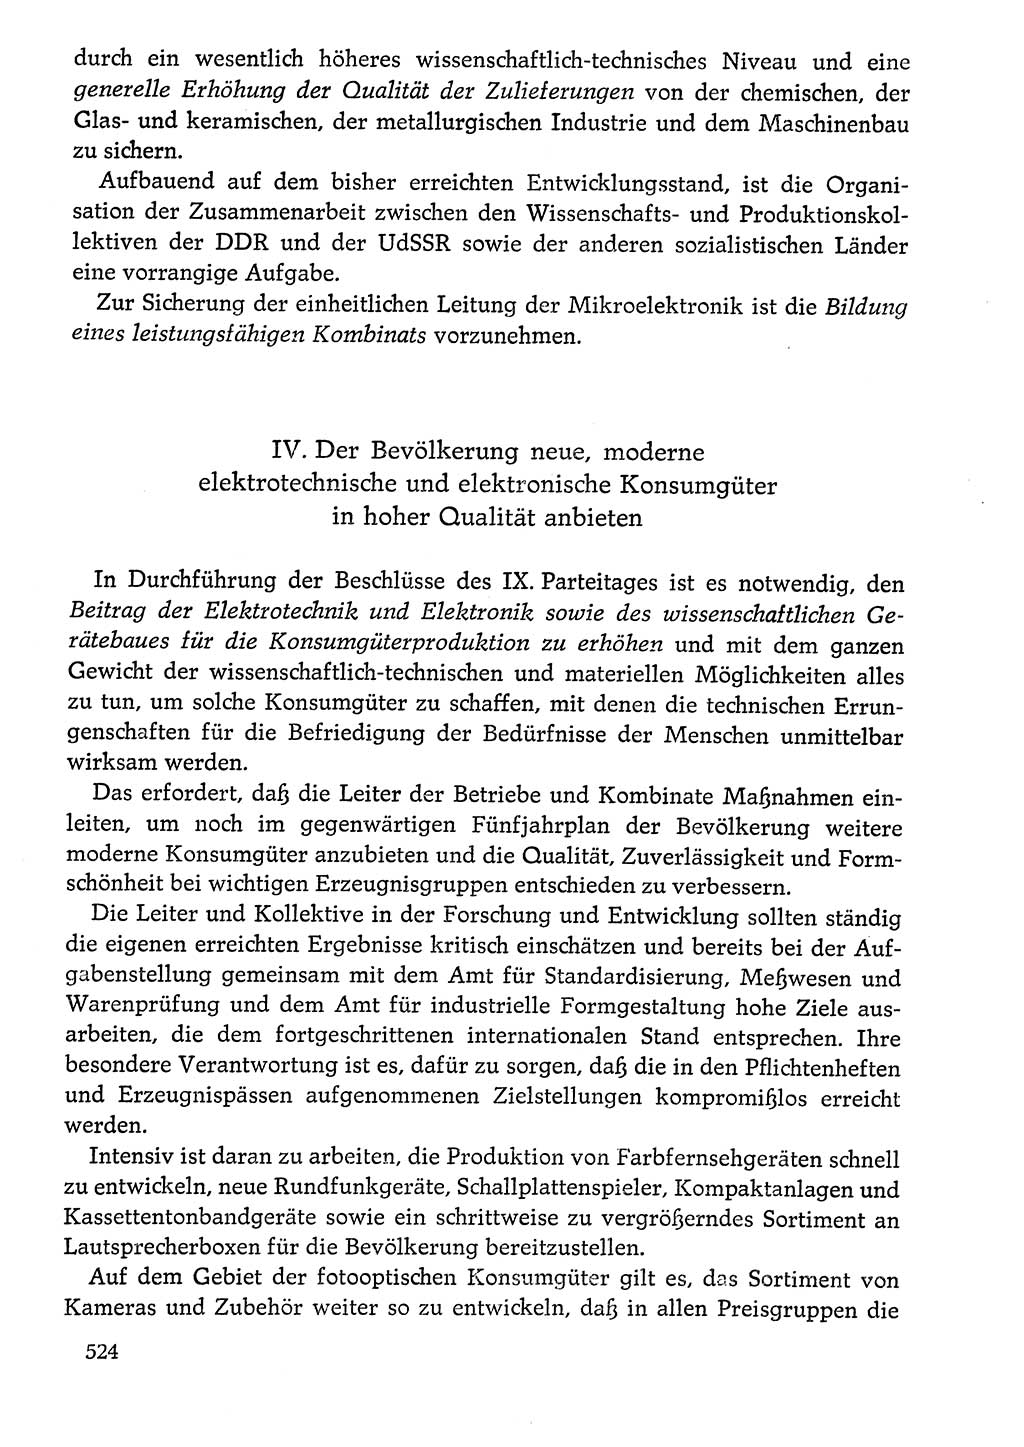 Dokumente der Sozialistischen Einheitspartei Deutschlands (SED) [Deutsche Demokratische Republik (DDR)] 1976-1977, Seite 524 (Dok. SED DDR 1976-1977, S. 524)